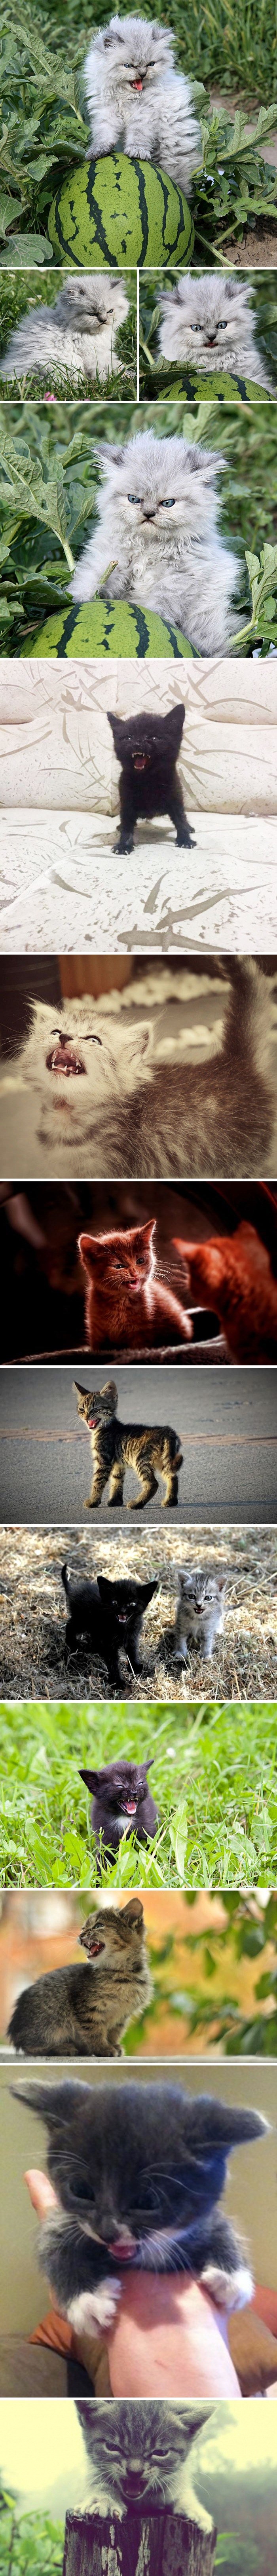 Deset užasno ljutih mačića koji će vas uplašiti svojim "strašnim" izrazom lica